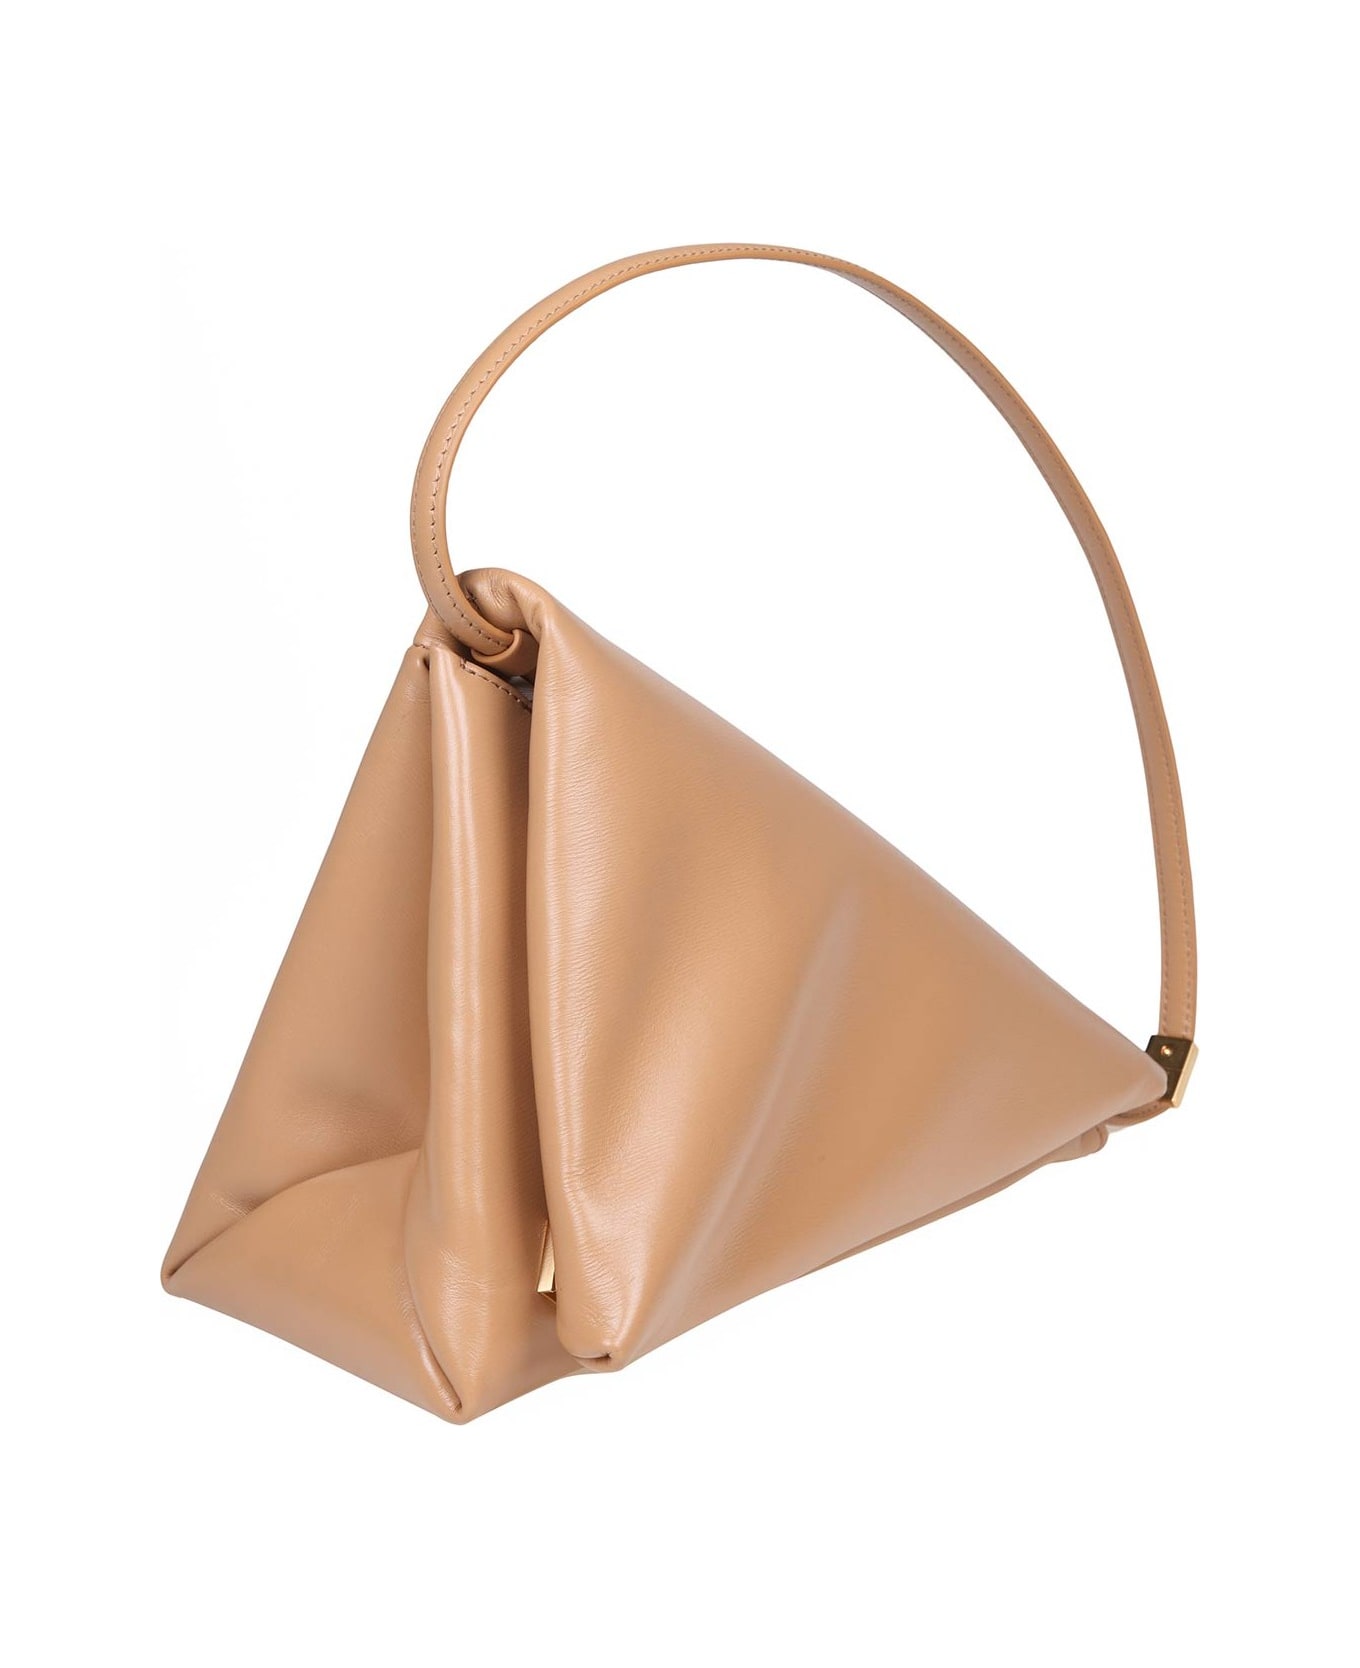 Marni Prisma Triangle Bag In Beige Leather - Neutro